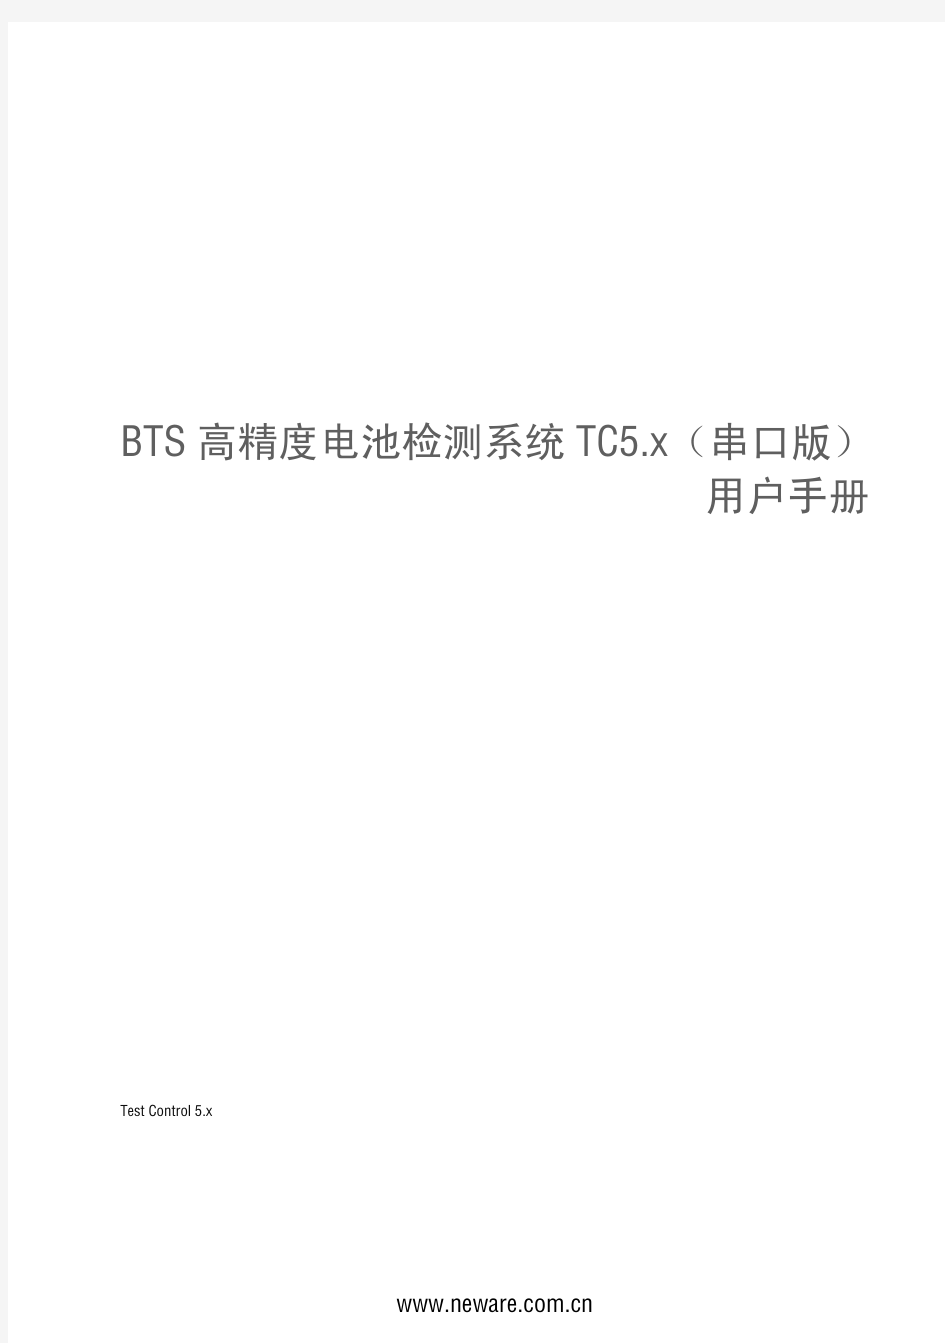 充放电仪BTS高精度电池检测系统TC5.x用户手册(印刷版)